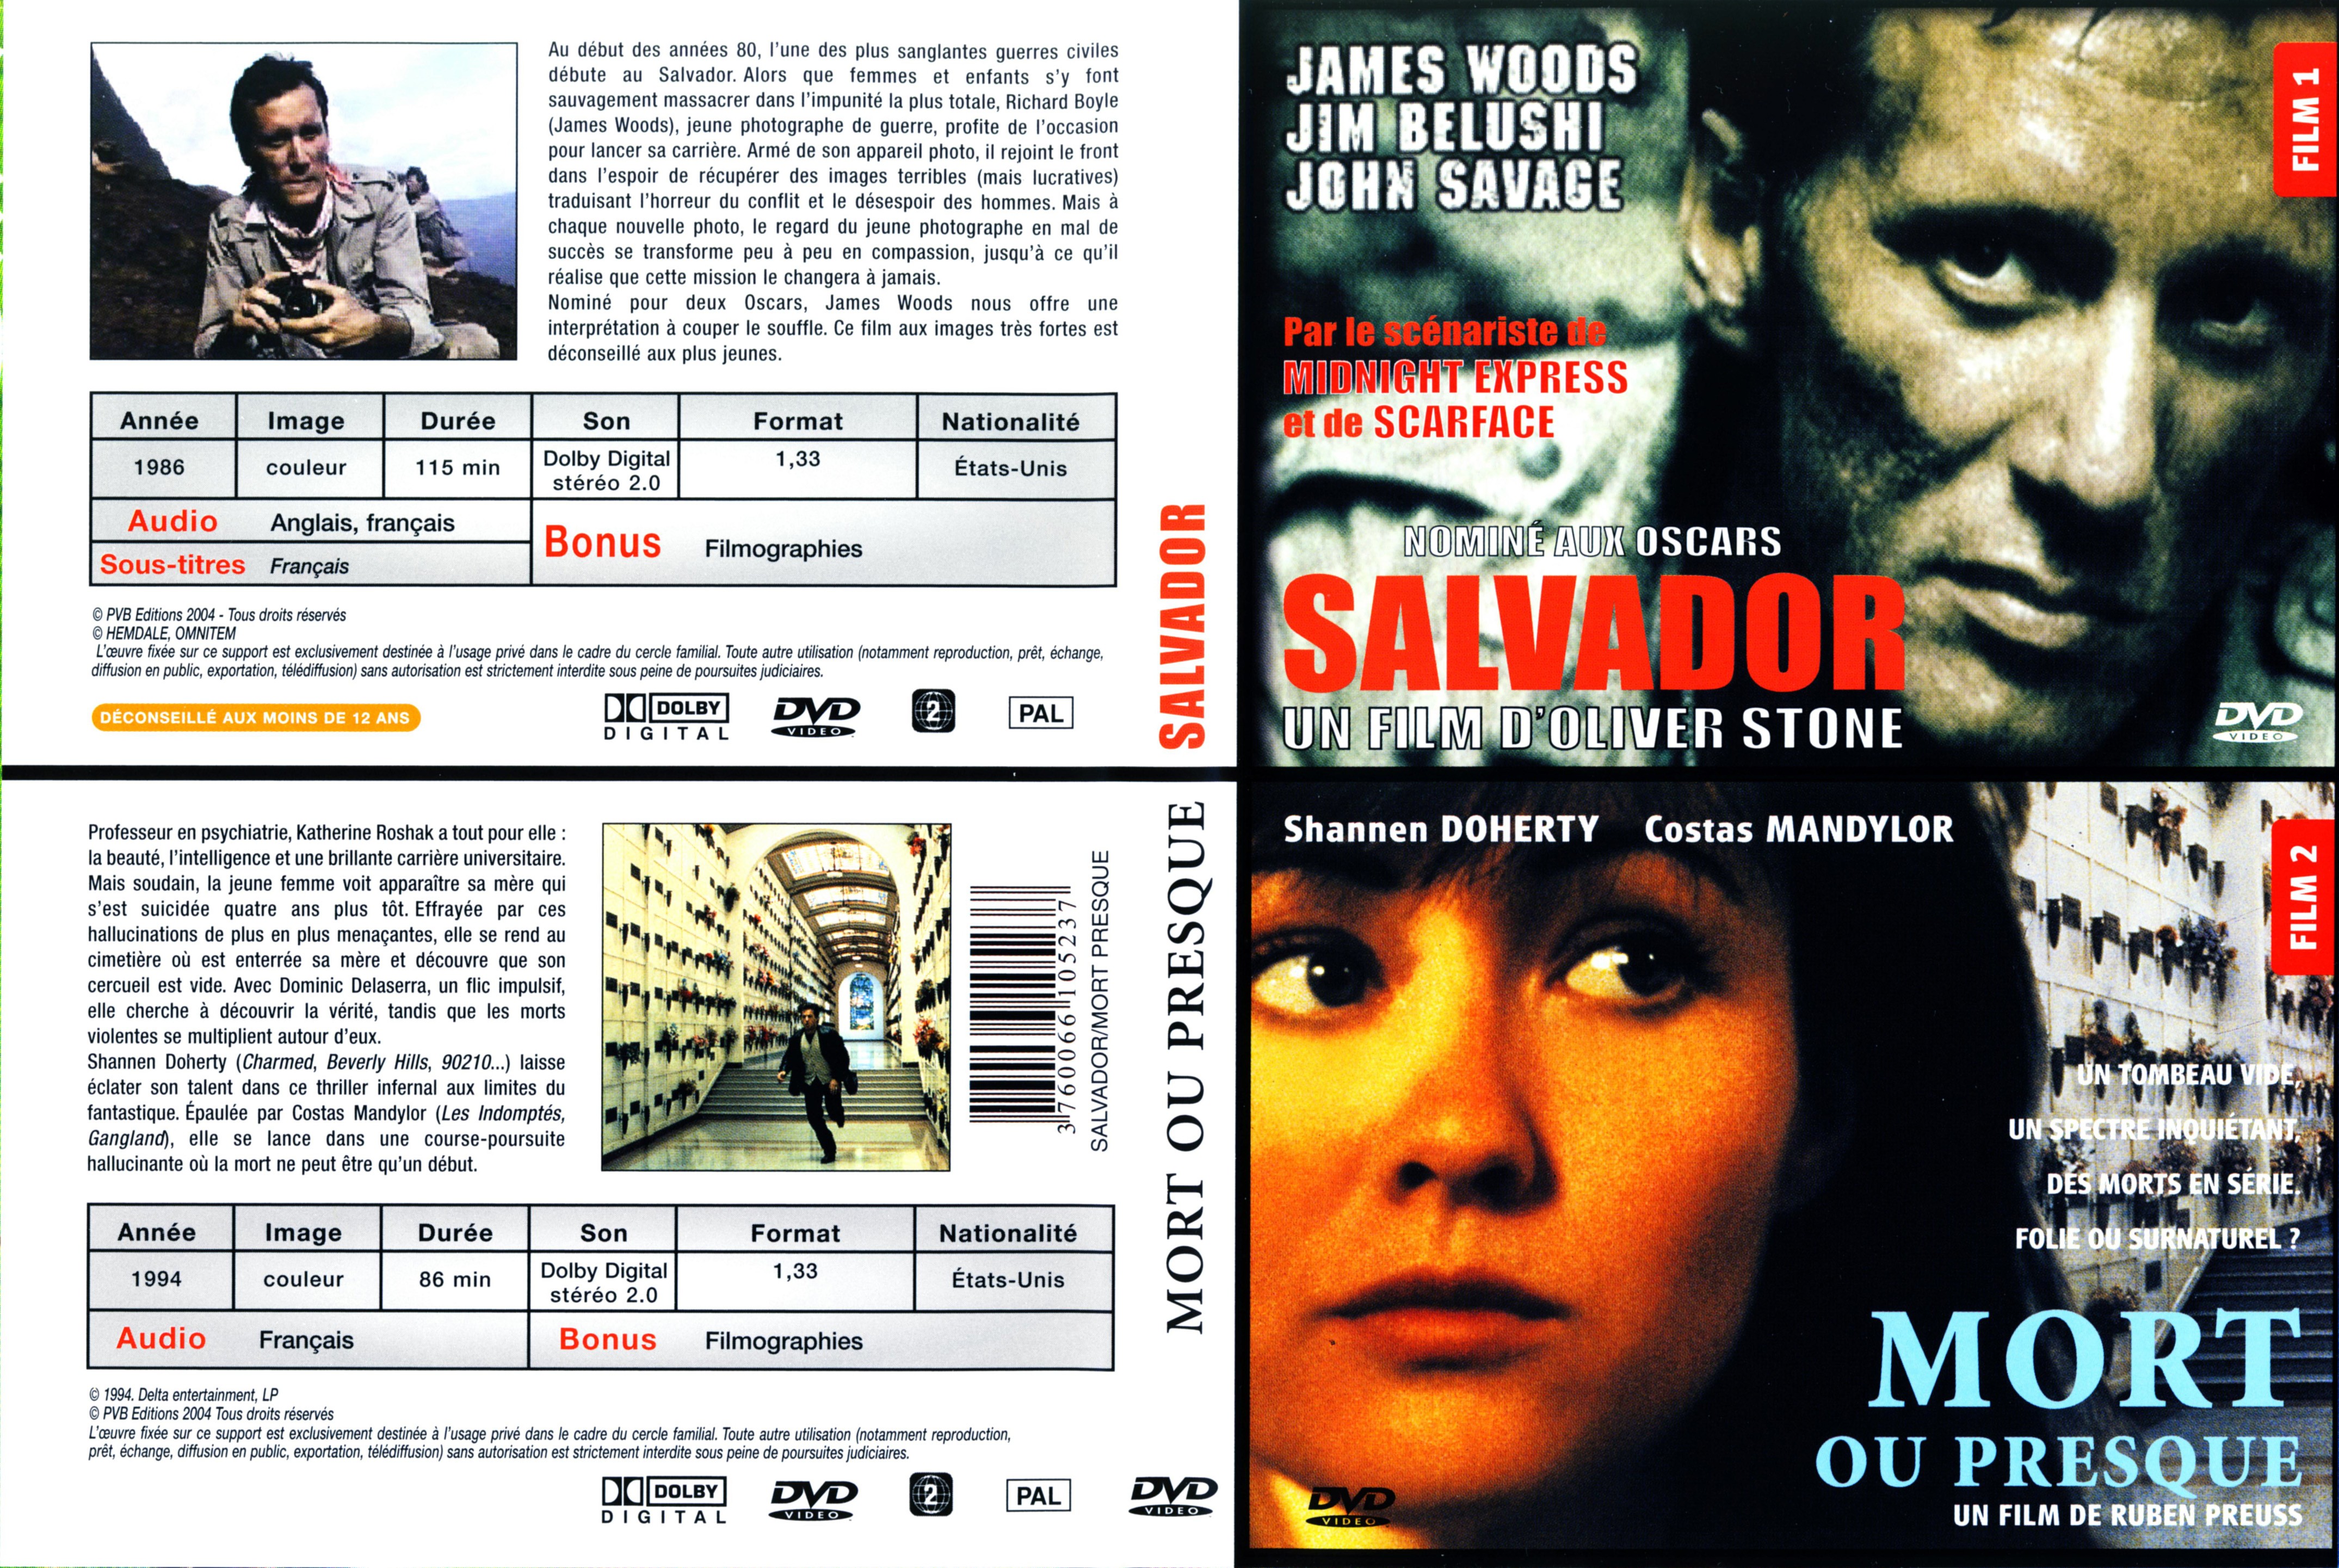 Jaquette DVD Salvador - Mort ou presque